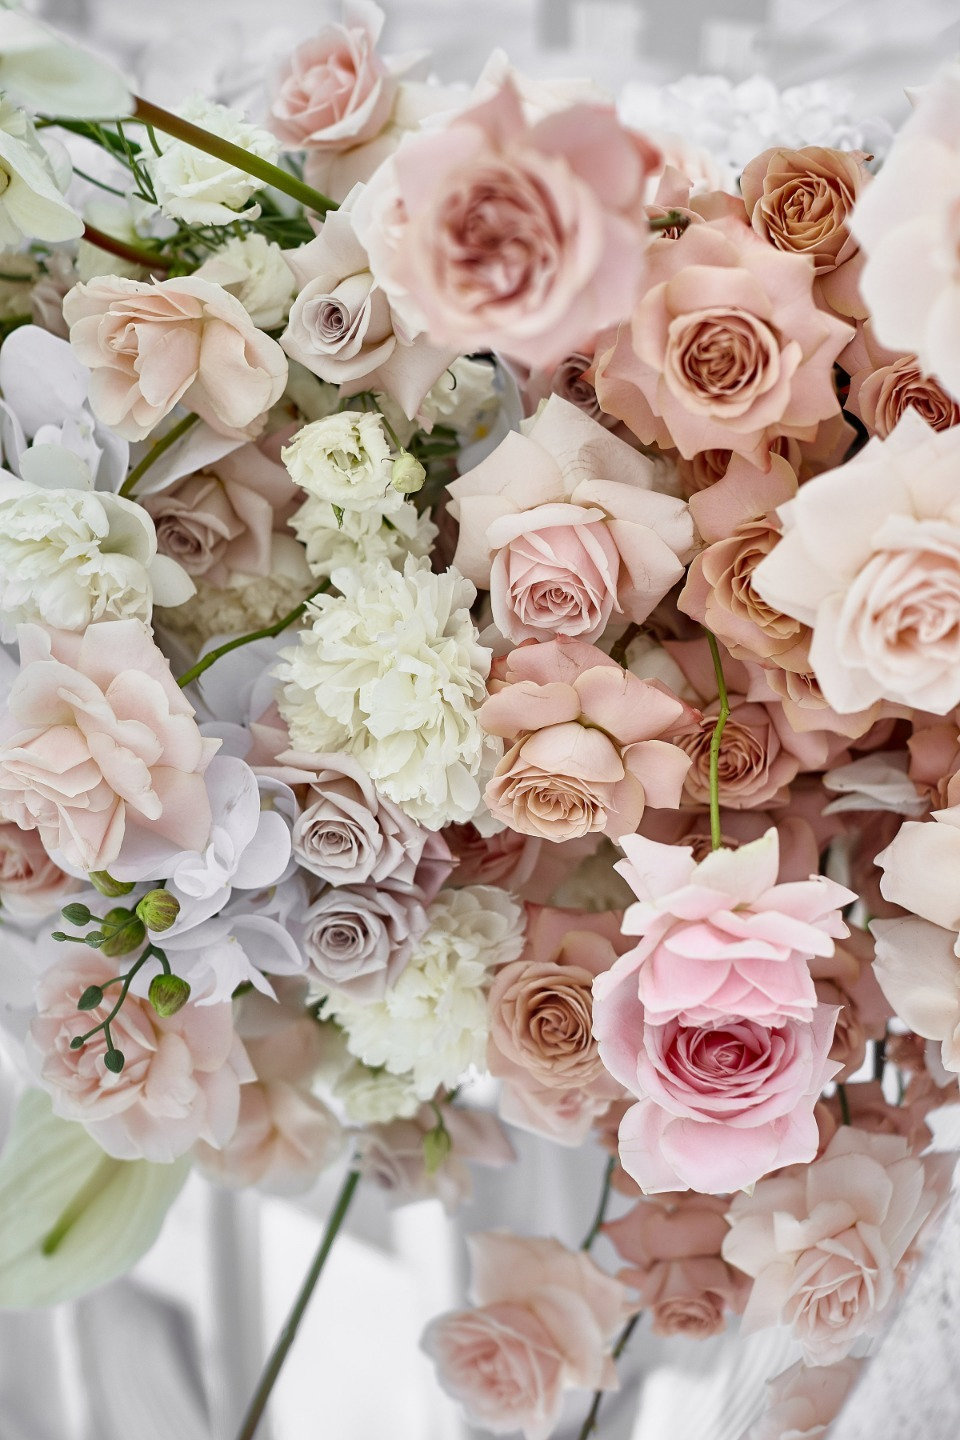 ФОТО ИЗ СТАТЬИ: Классическая свадьба в розовых оттенках на берегу реки